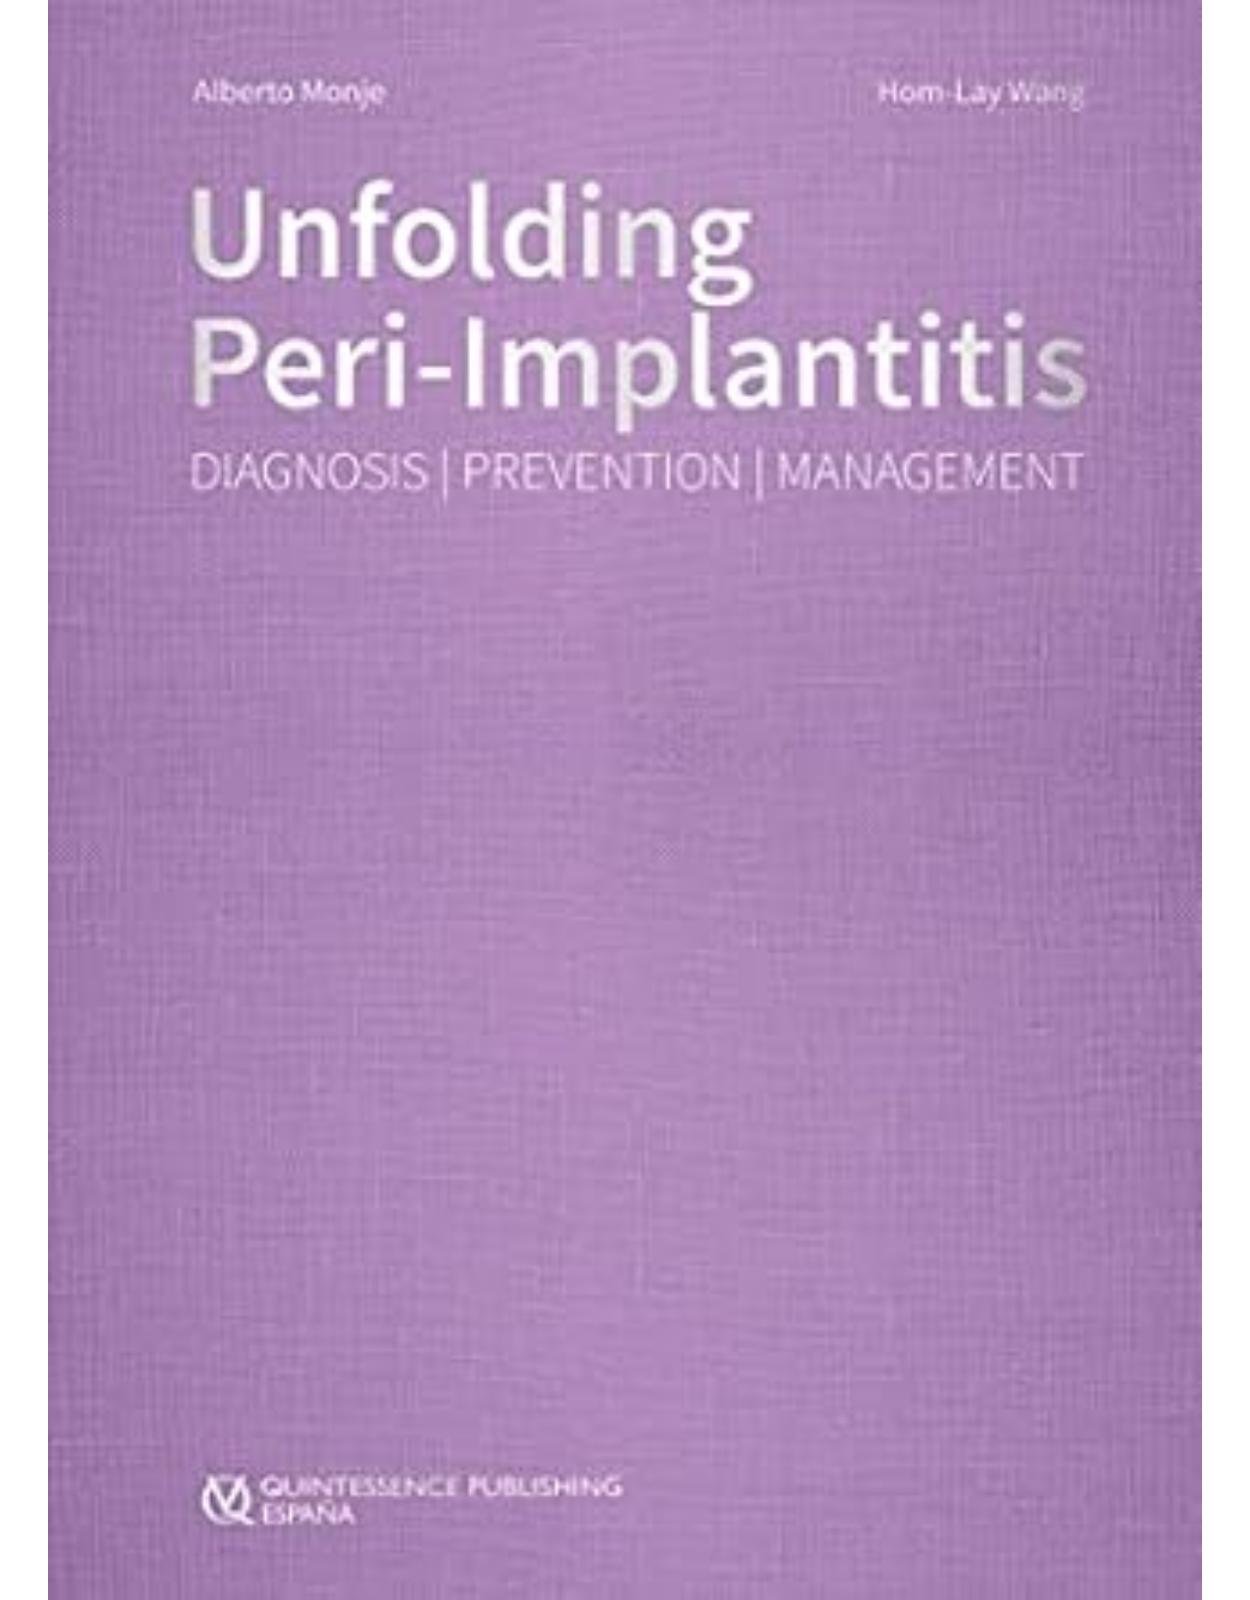 Unfolding Peri-Implantitis: Diagnosis | Prevention | Management